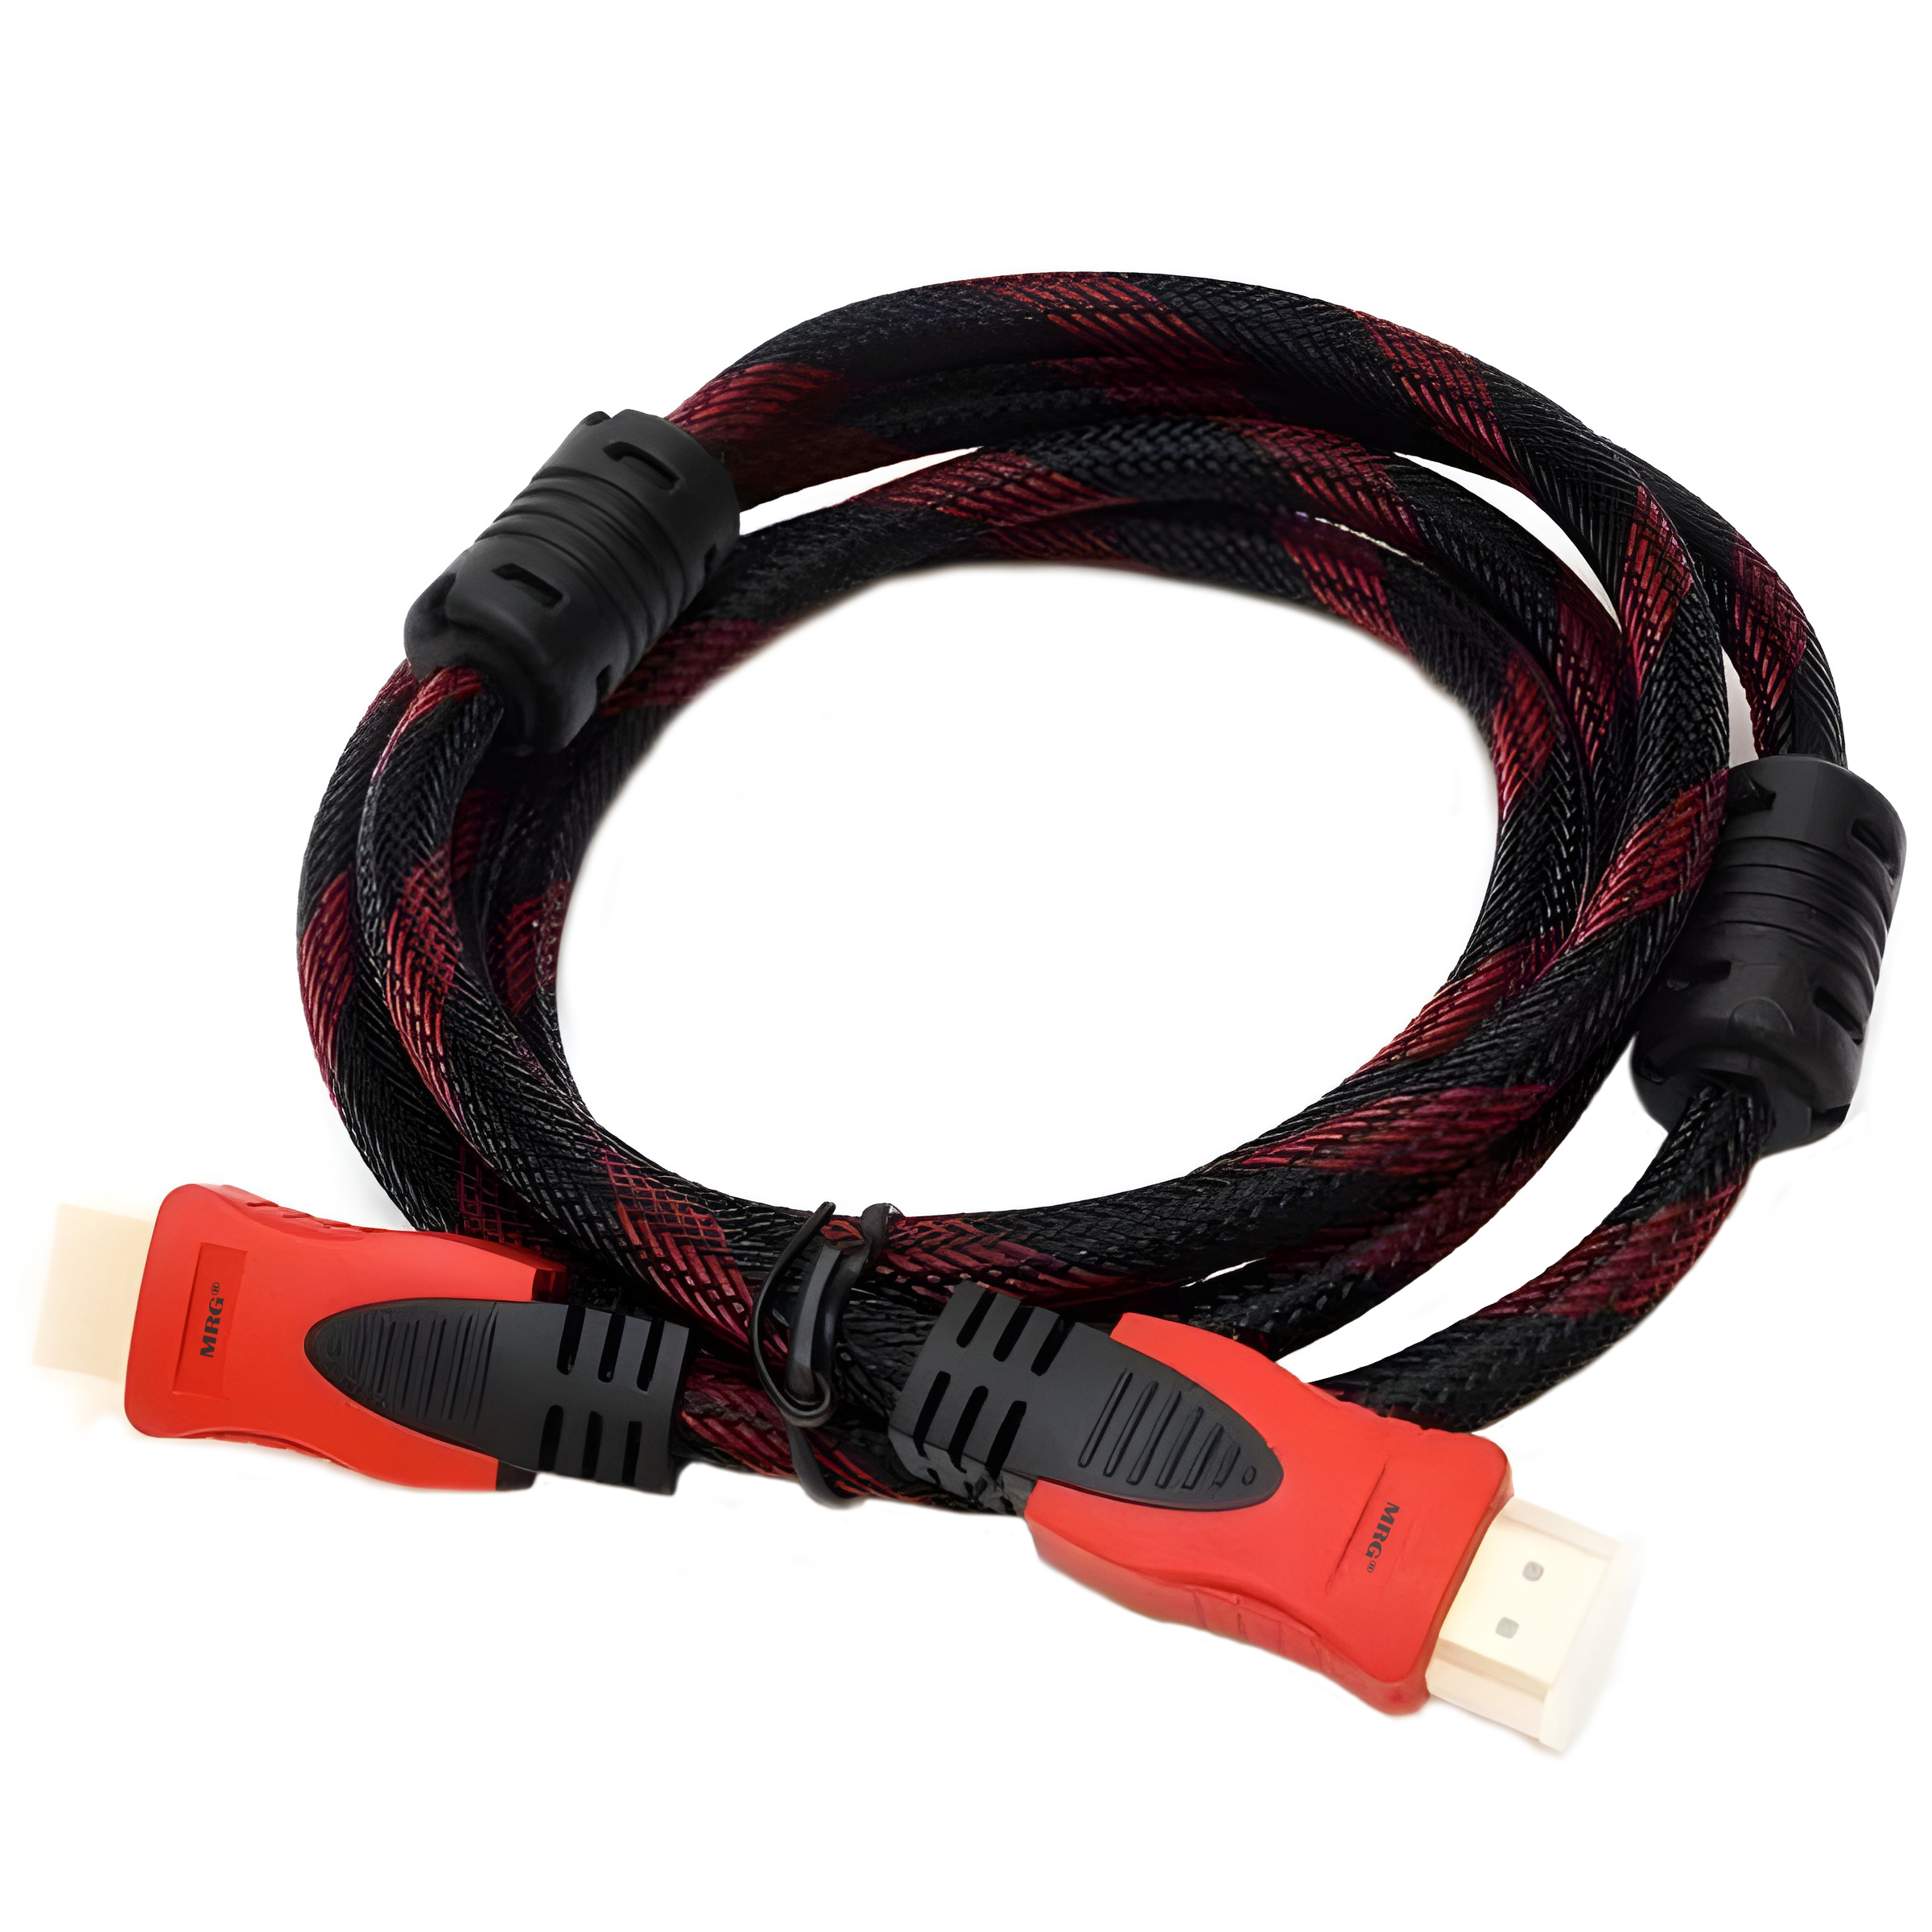 Cablu Hdmi MRG M749, 150cm, Digital, Negru cu Rosu